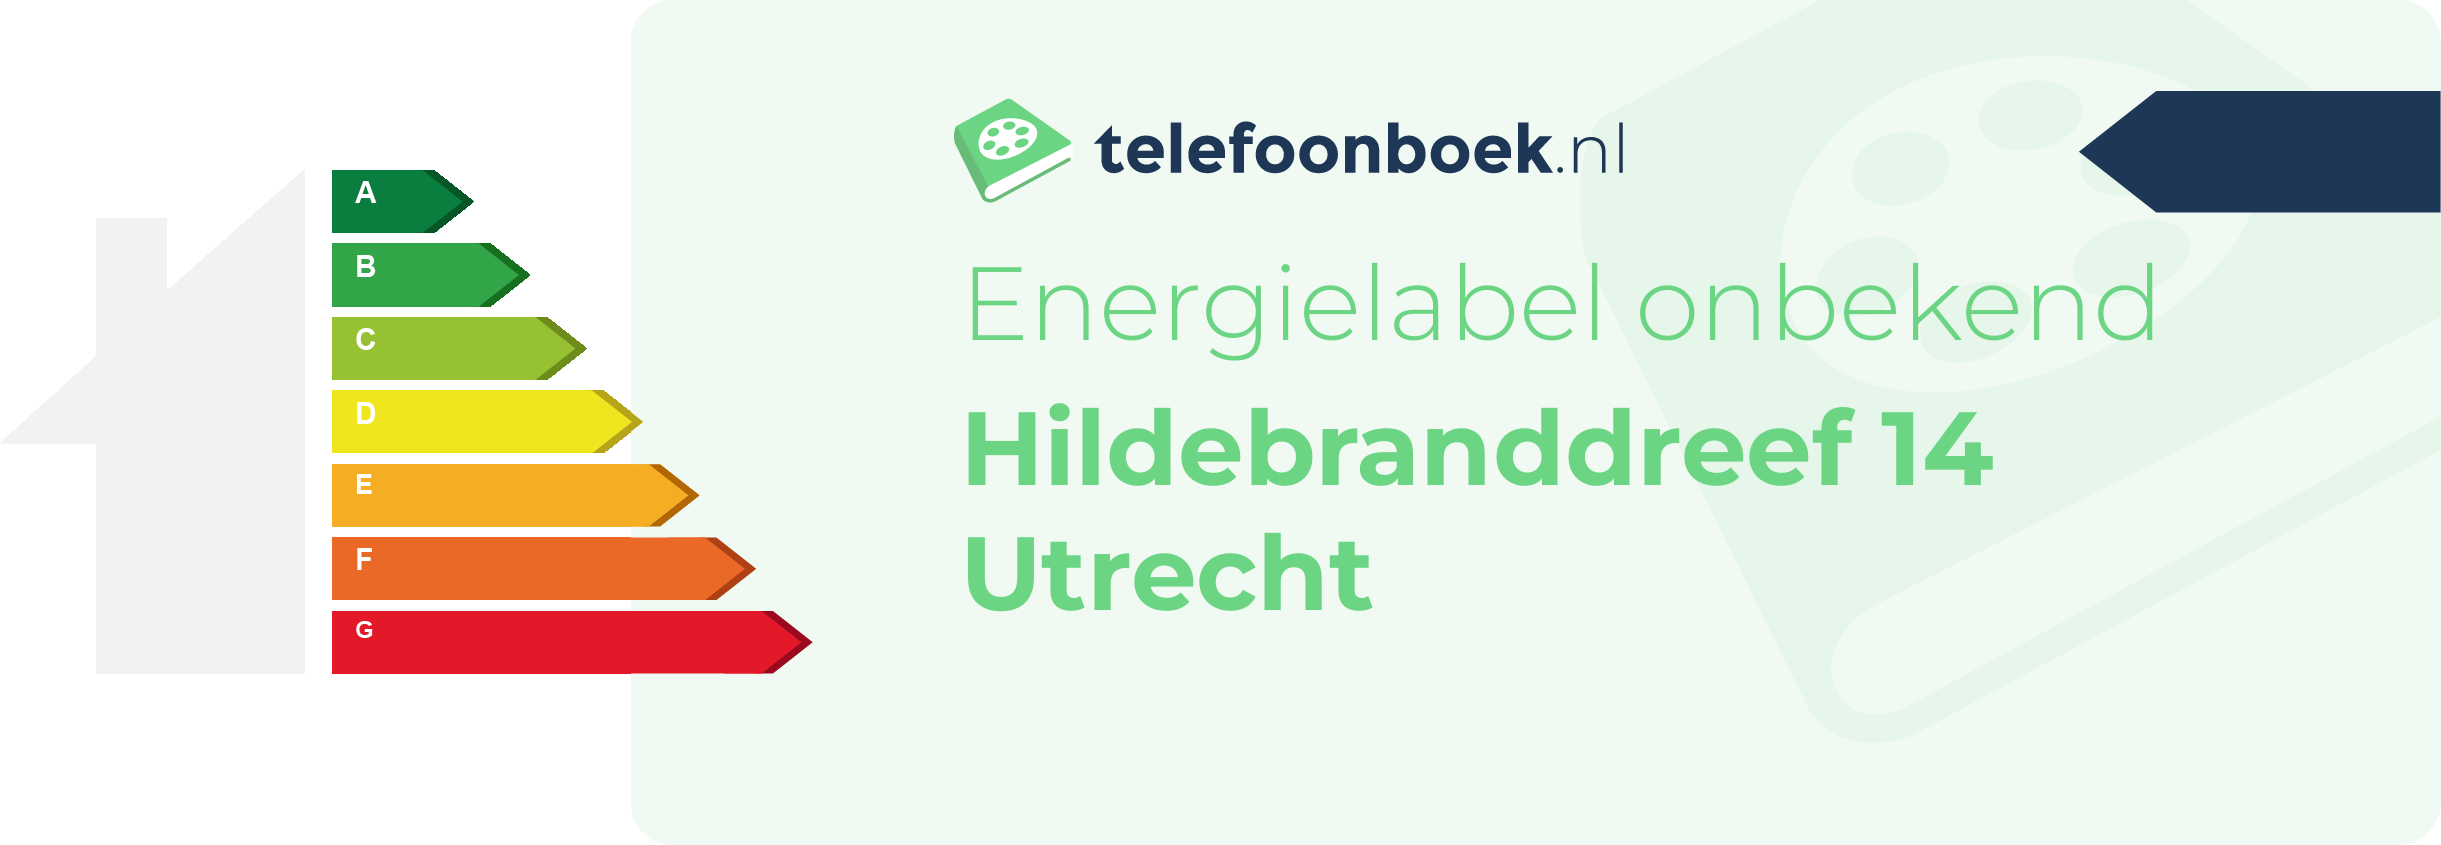 Energielabel Hildebranddreef 14 Utrecht